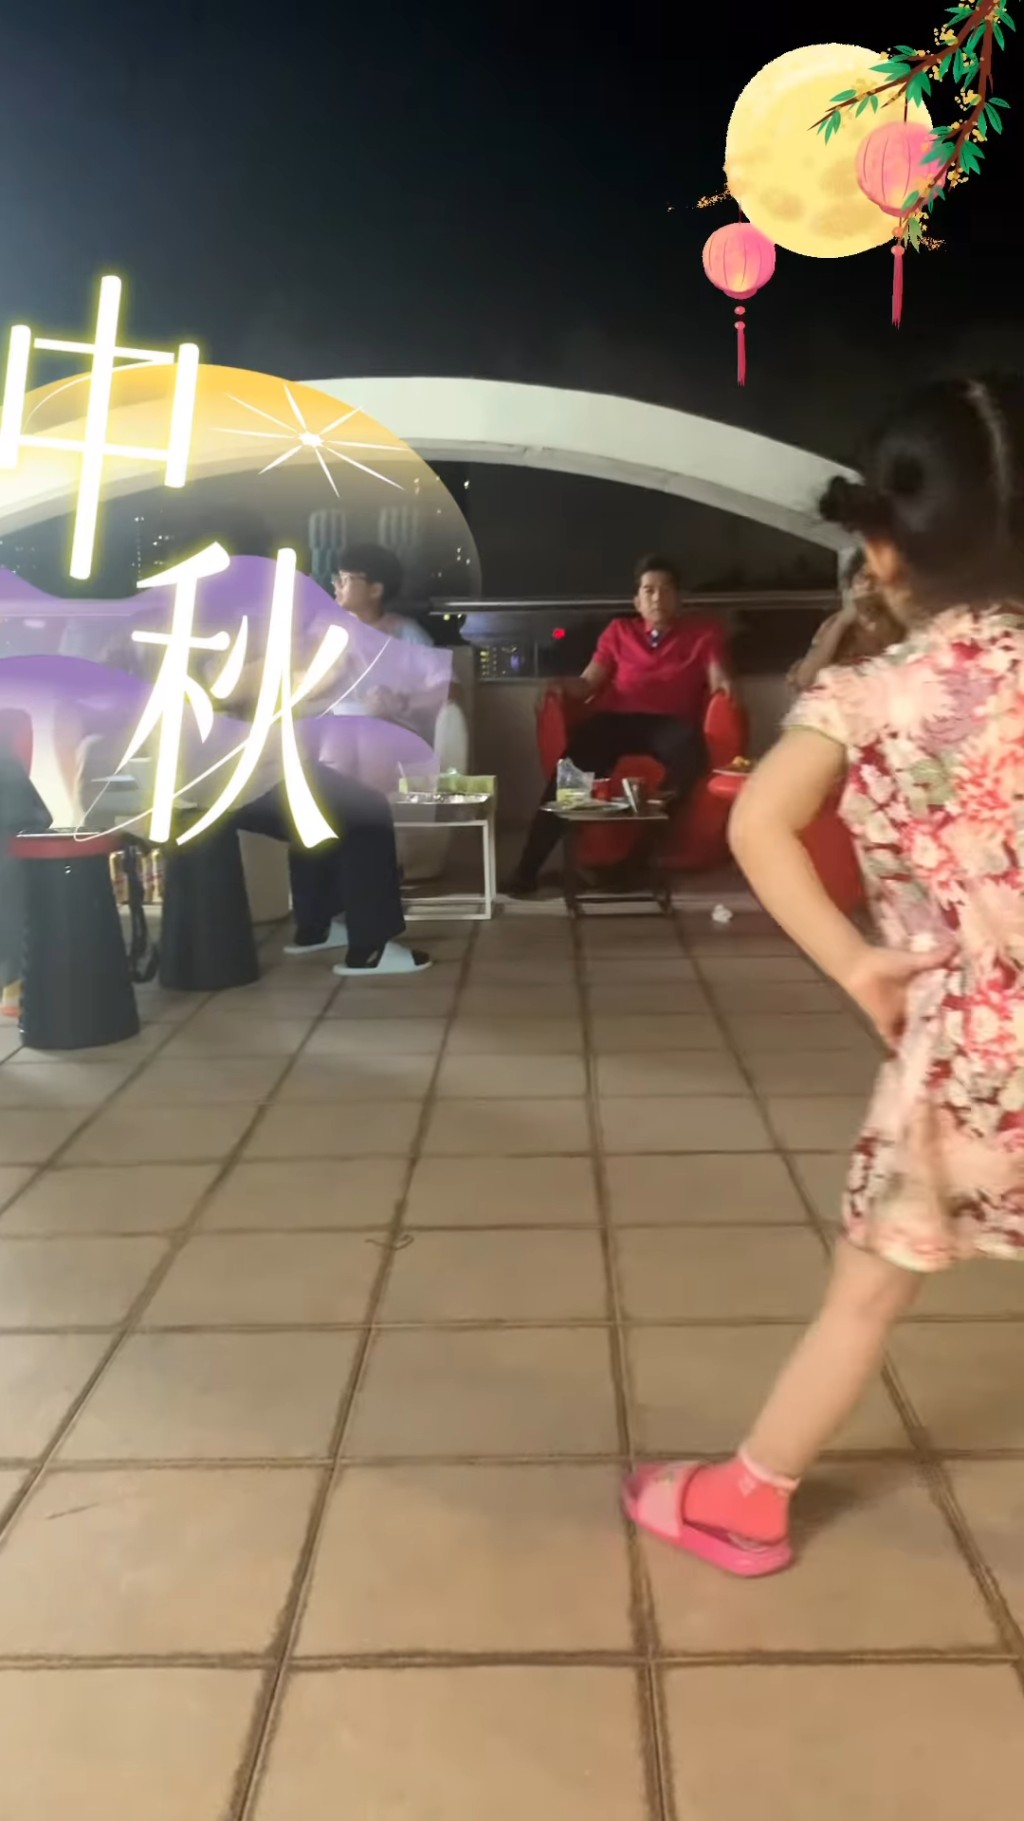 中秋节也有在天台BBQ，细女更跳舞娱宾。